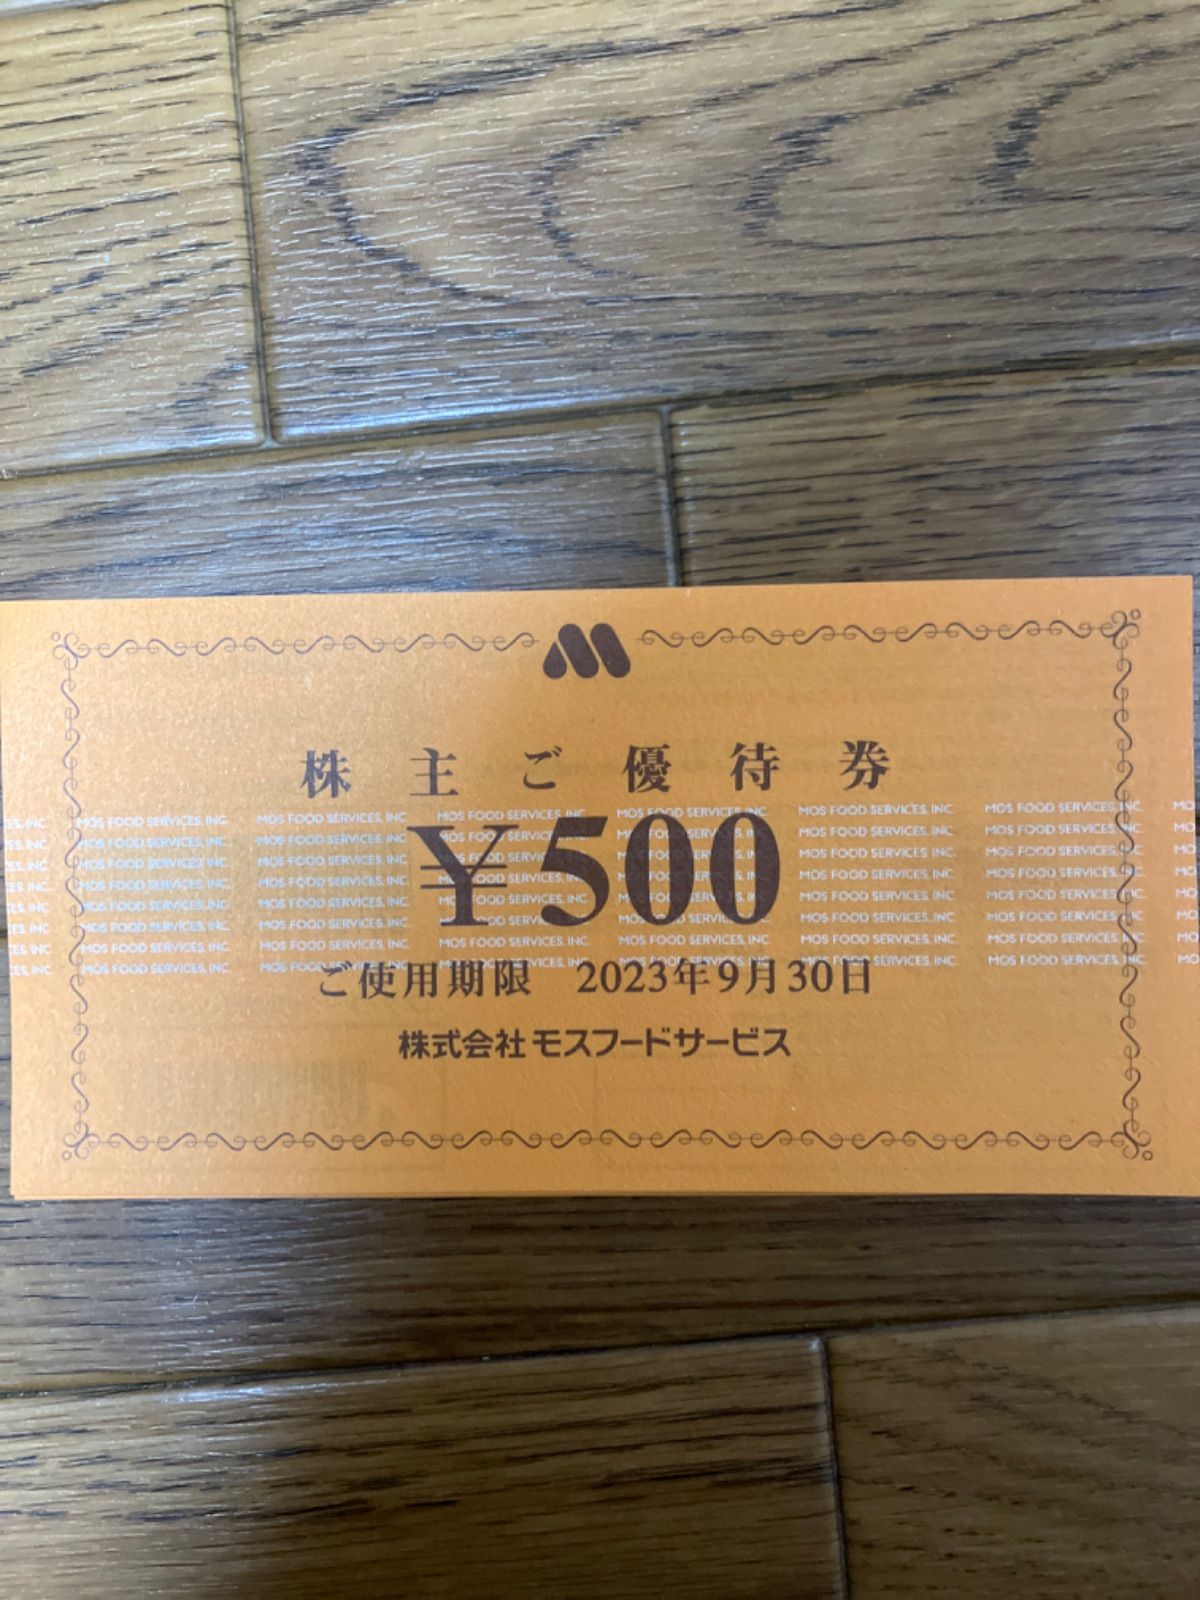 モスバーガー株主優待券一万円分 - メルカリShops